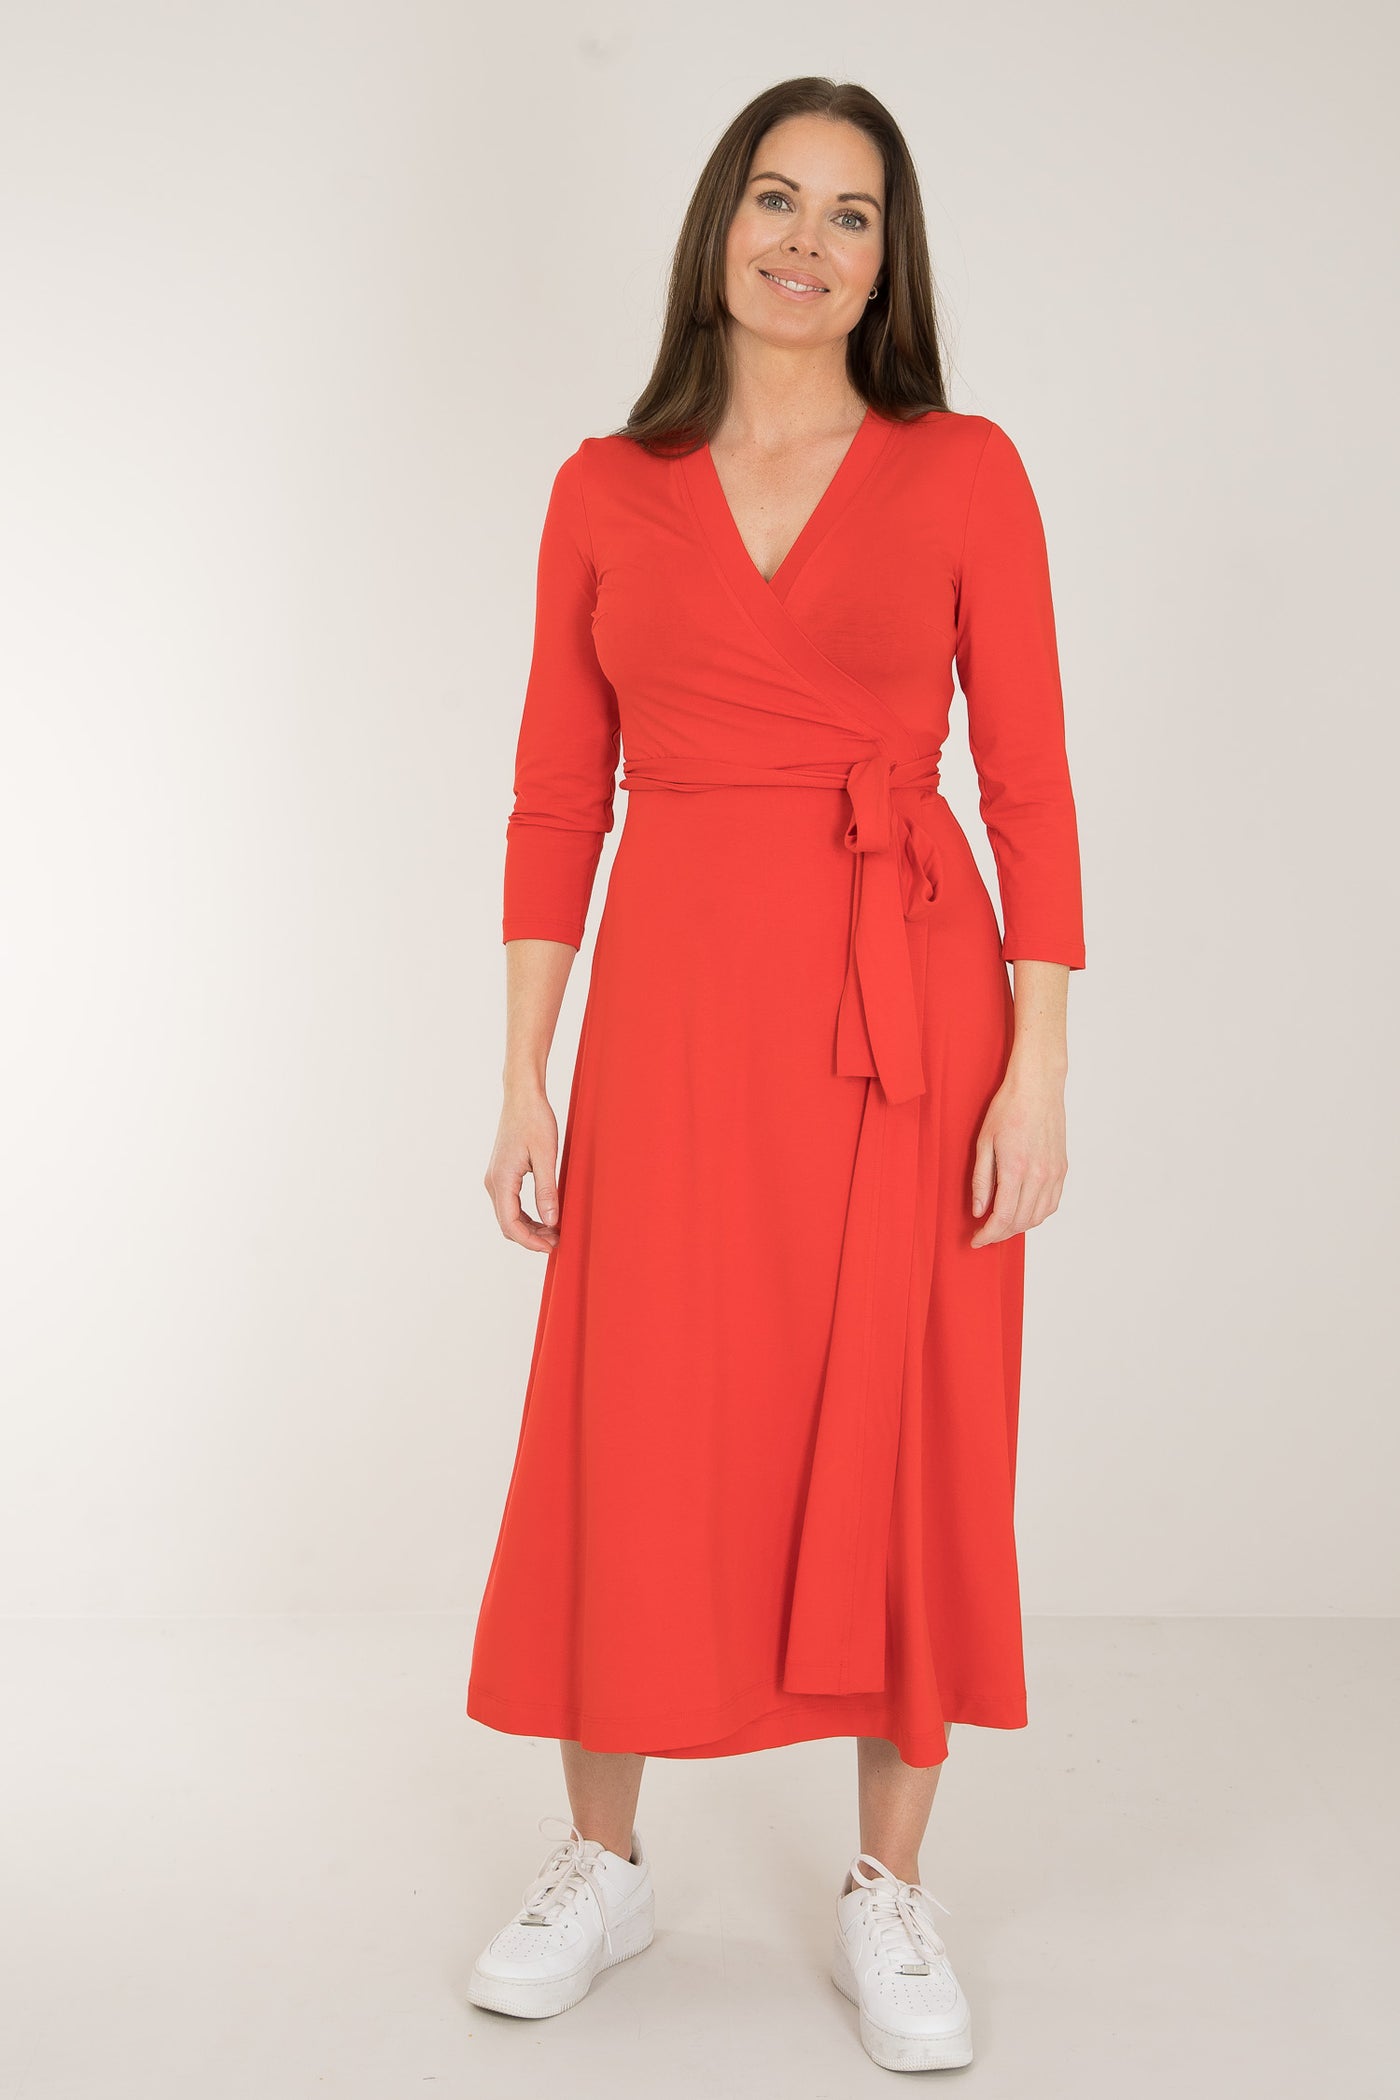 Bestie midi wrap jersey dress - Bright red - Vadlång, klarröd omlottklänning i trikå